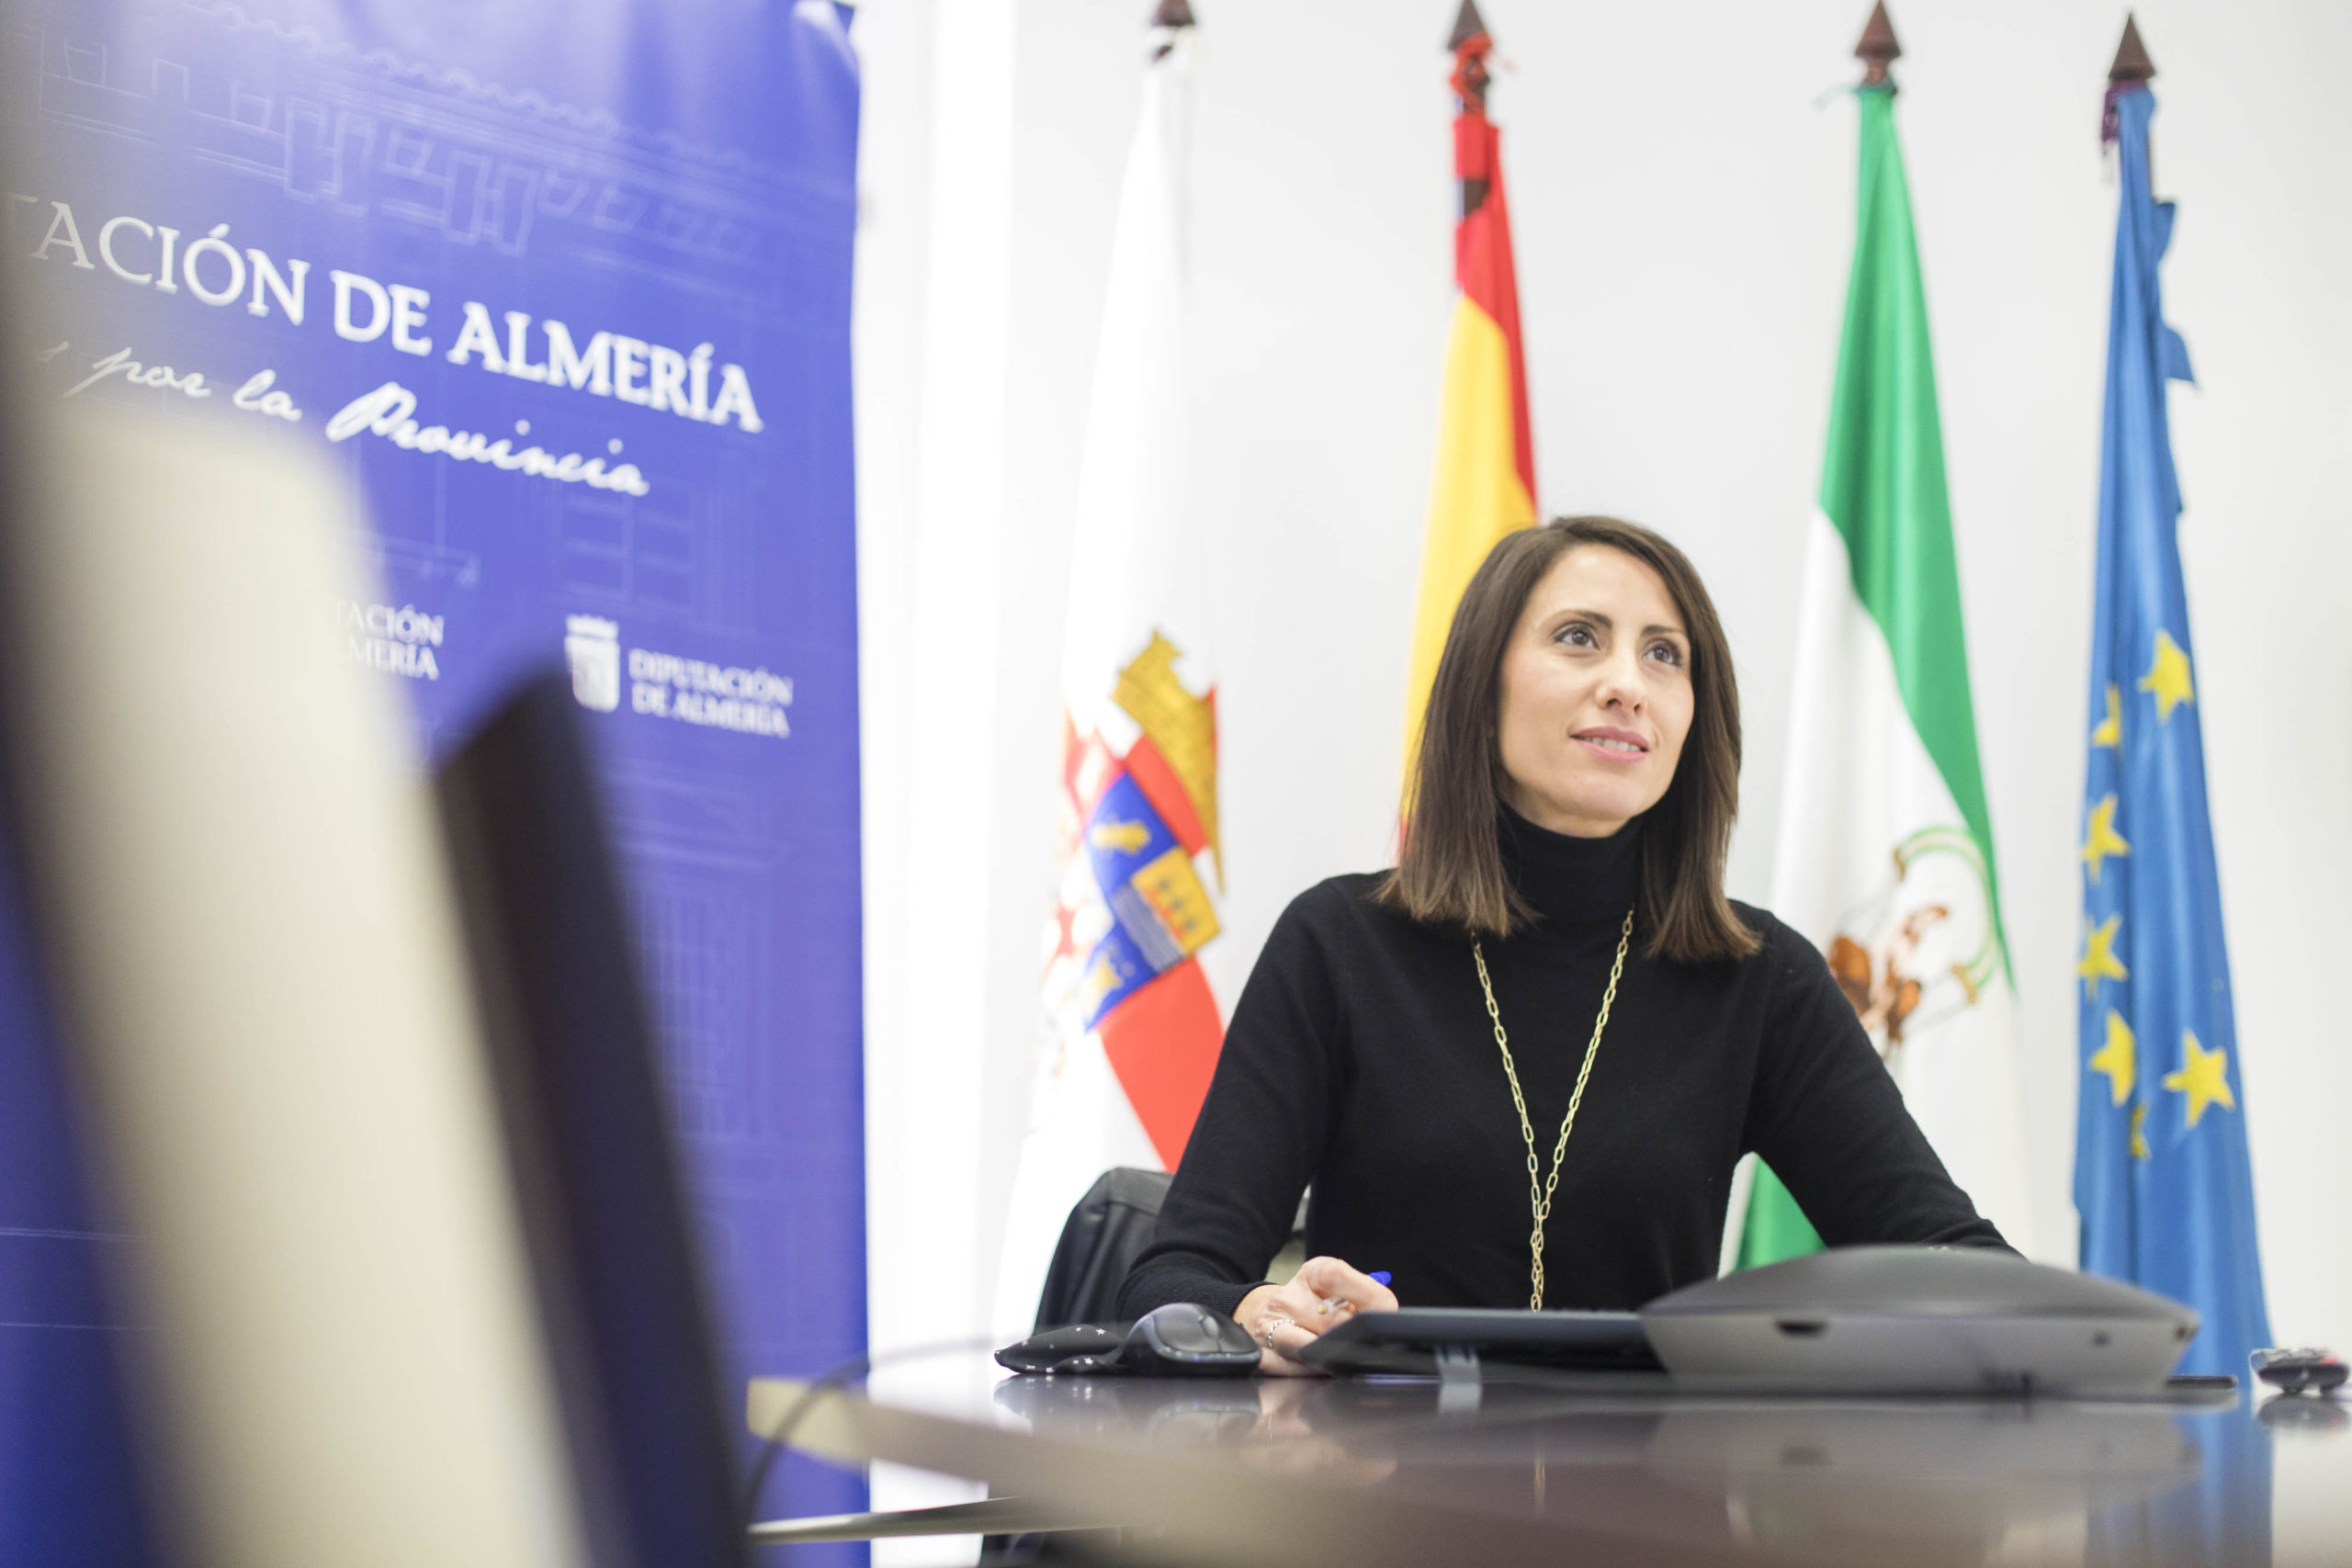 Diputación de Almería coordina con las diputaciones andaluzas la imagen para conmemorar el 8 de marzo